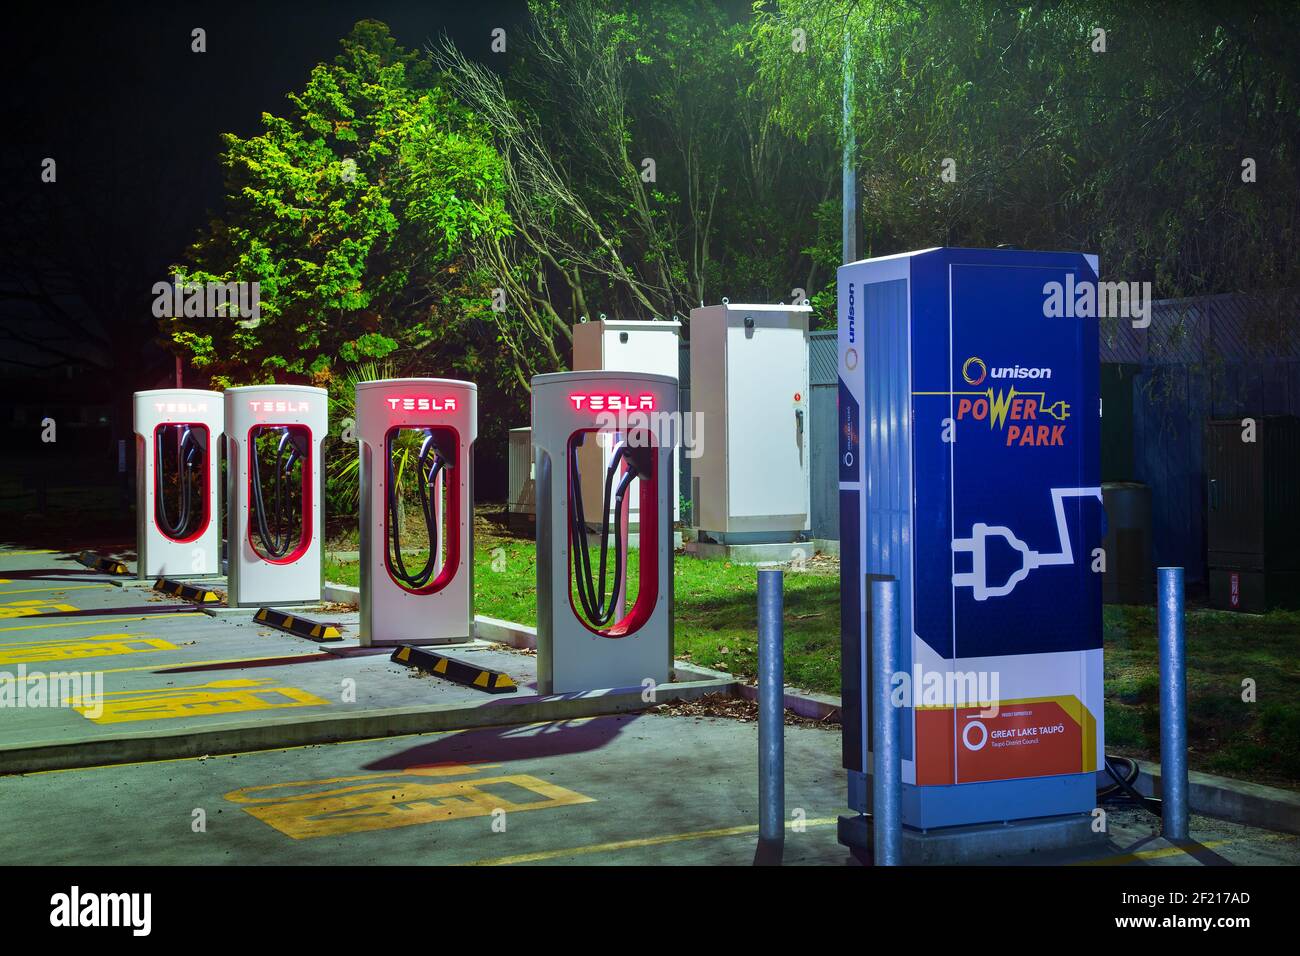 Eine Reihe von Ladestationen für Elektrofahrzeuge bei Nacht. Die meisten haben das Tesla-Logo. Taupo, Neuseeland Stockfoto